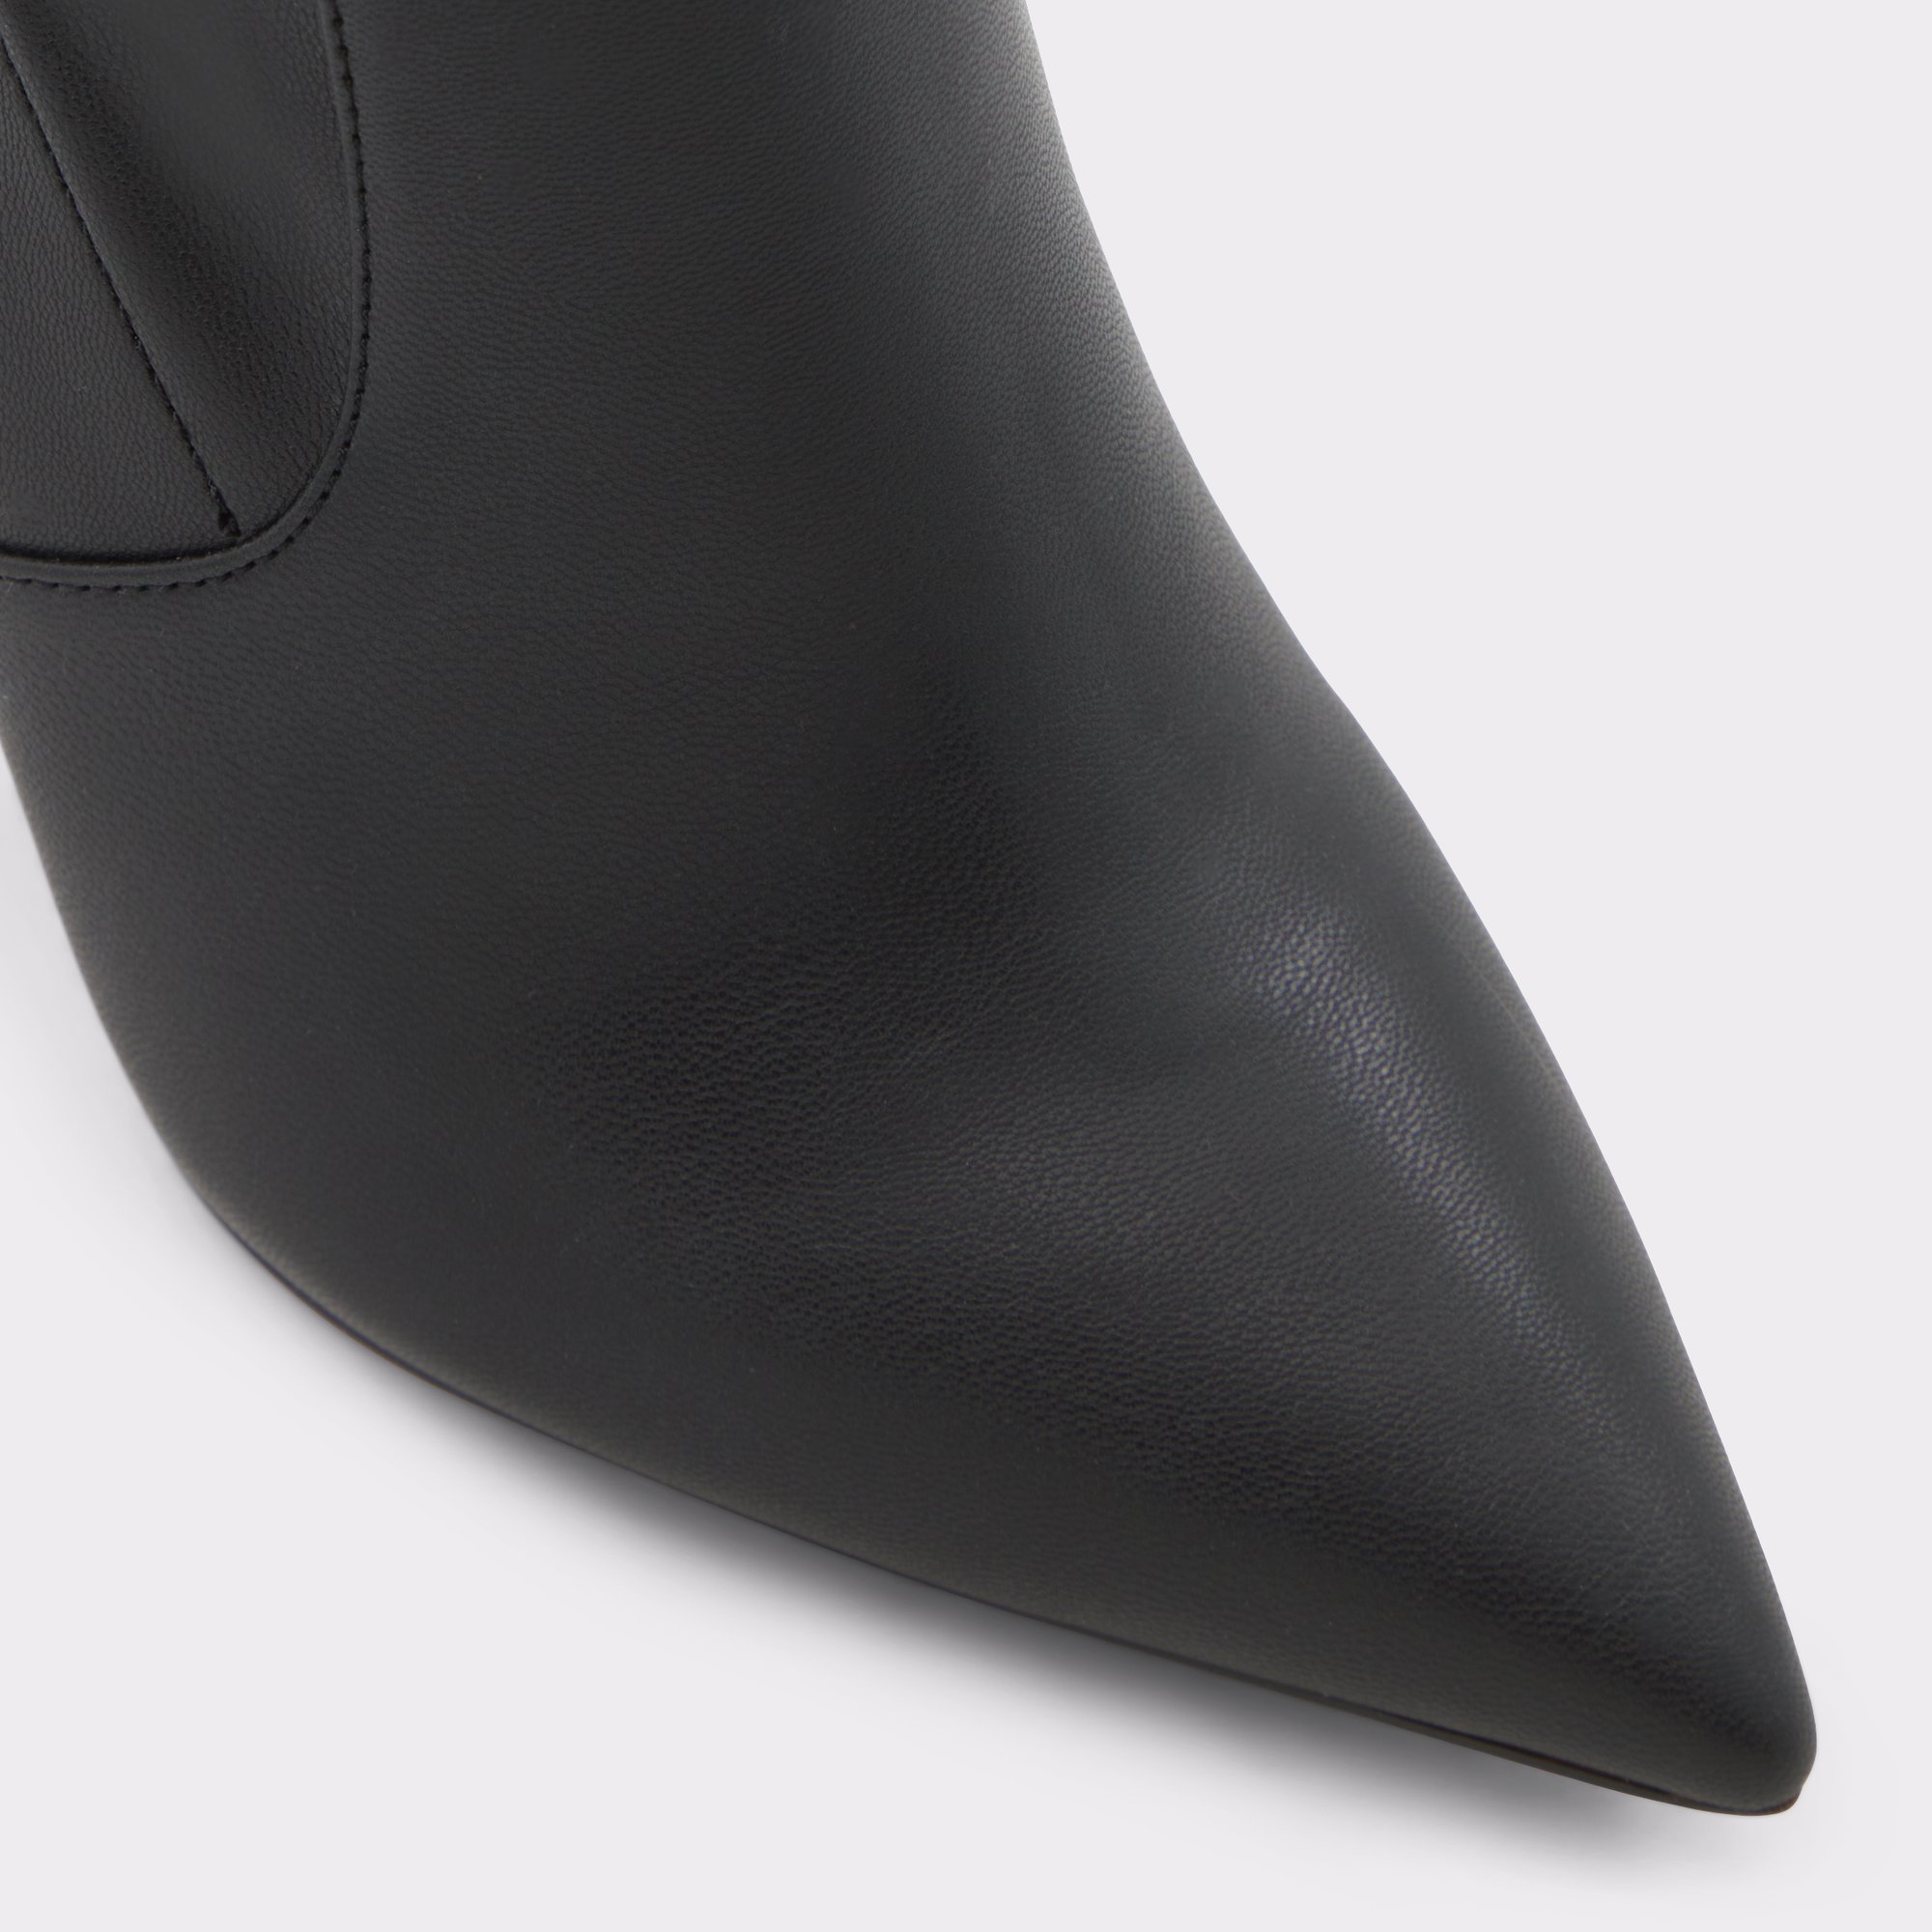 Dove Black Women's Ankle boots | ALDO Canada